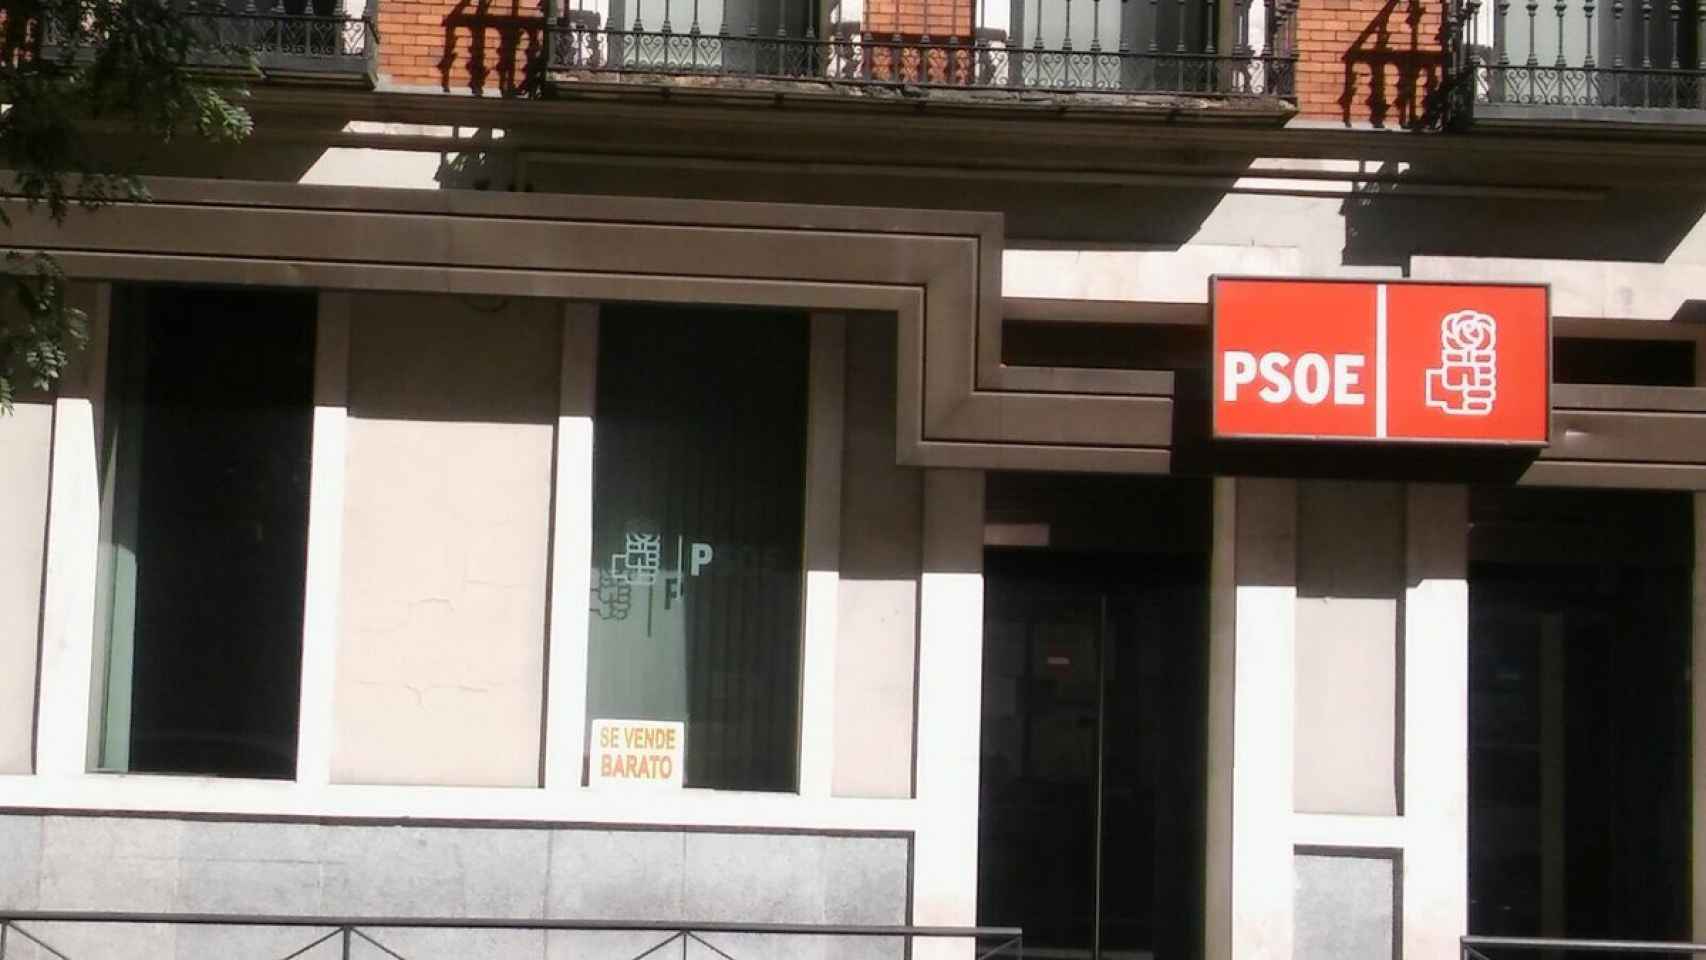 Aparece un cartel de se vende barato en la sede del PSOE